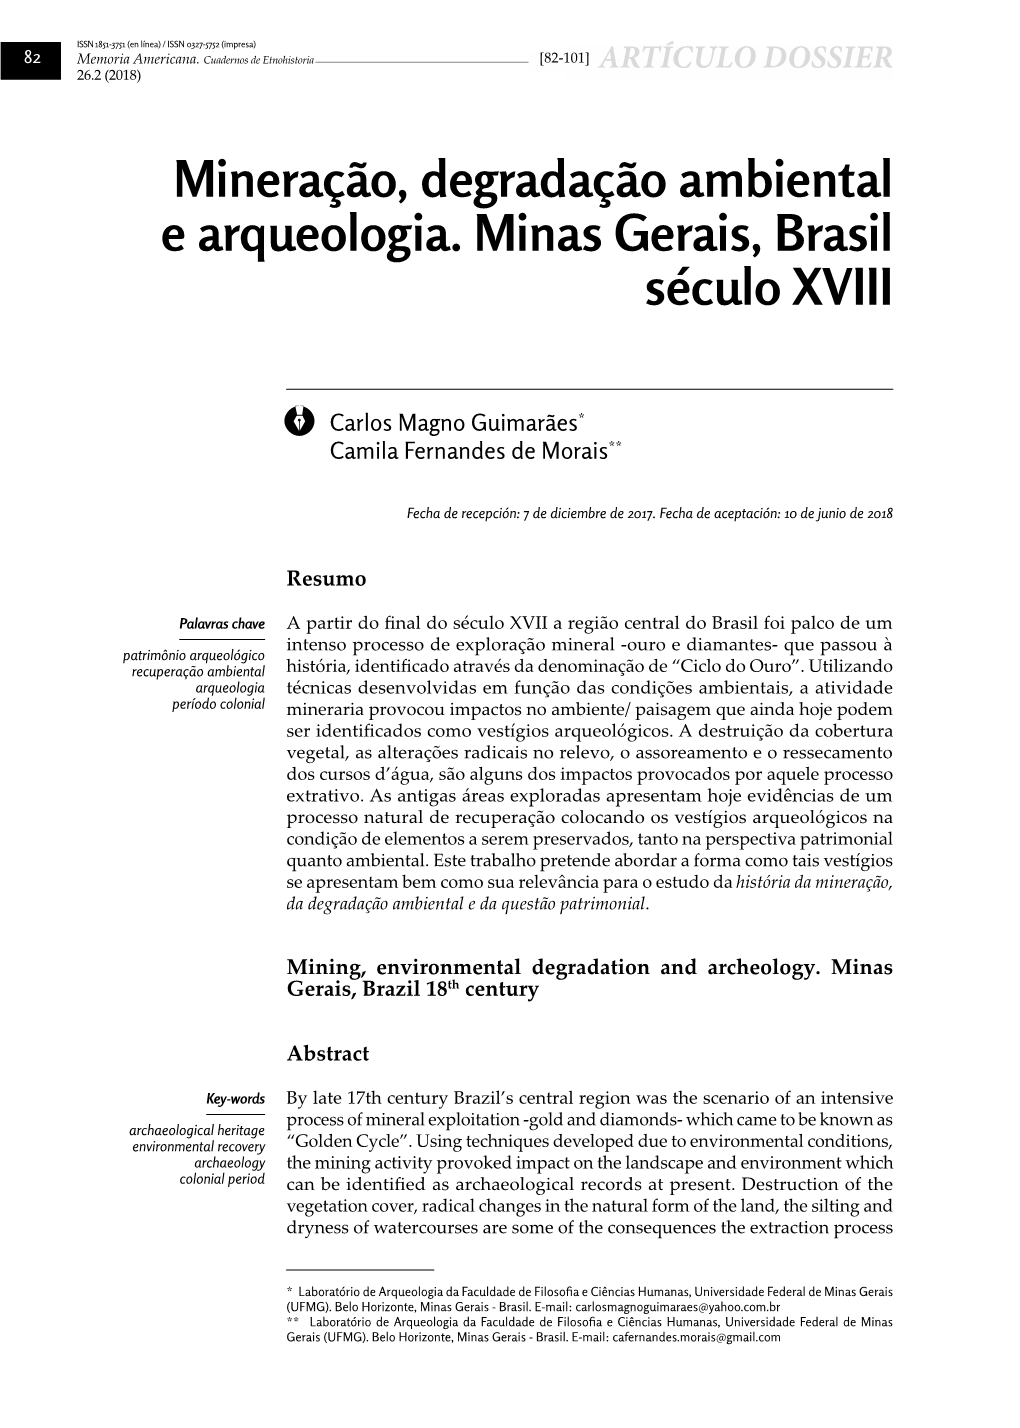 Mineração, Degradação Ambiental E Arqueologia. Minas Gerais, Brasil Século XVIII